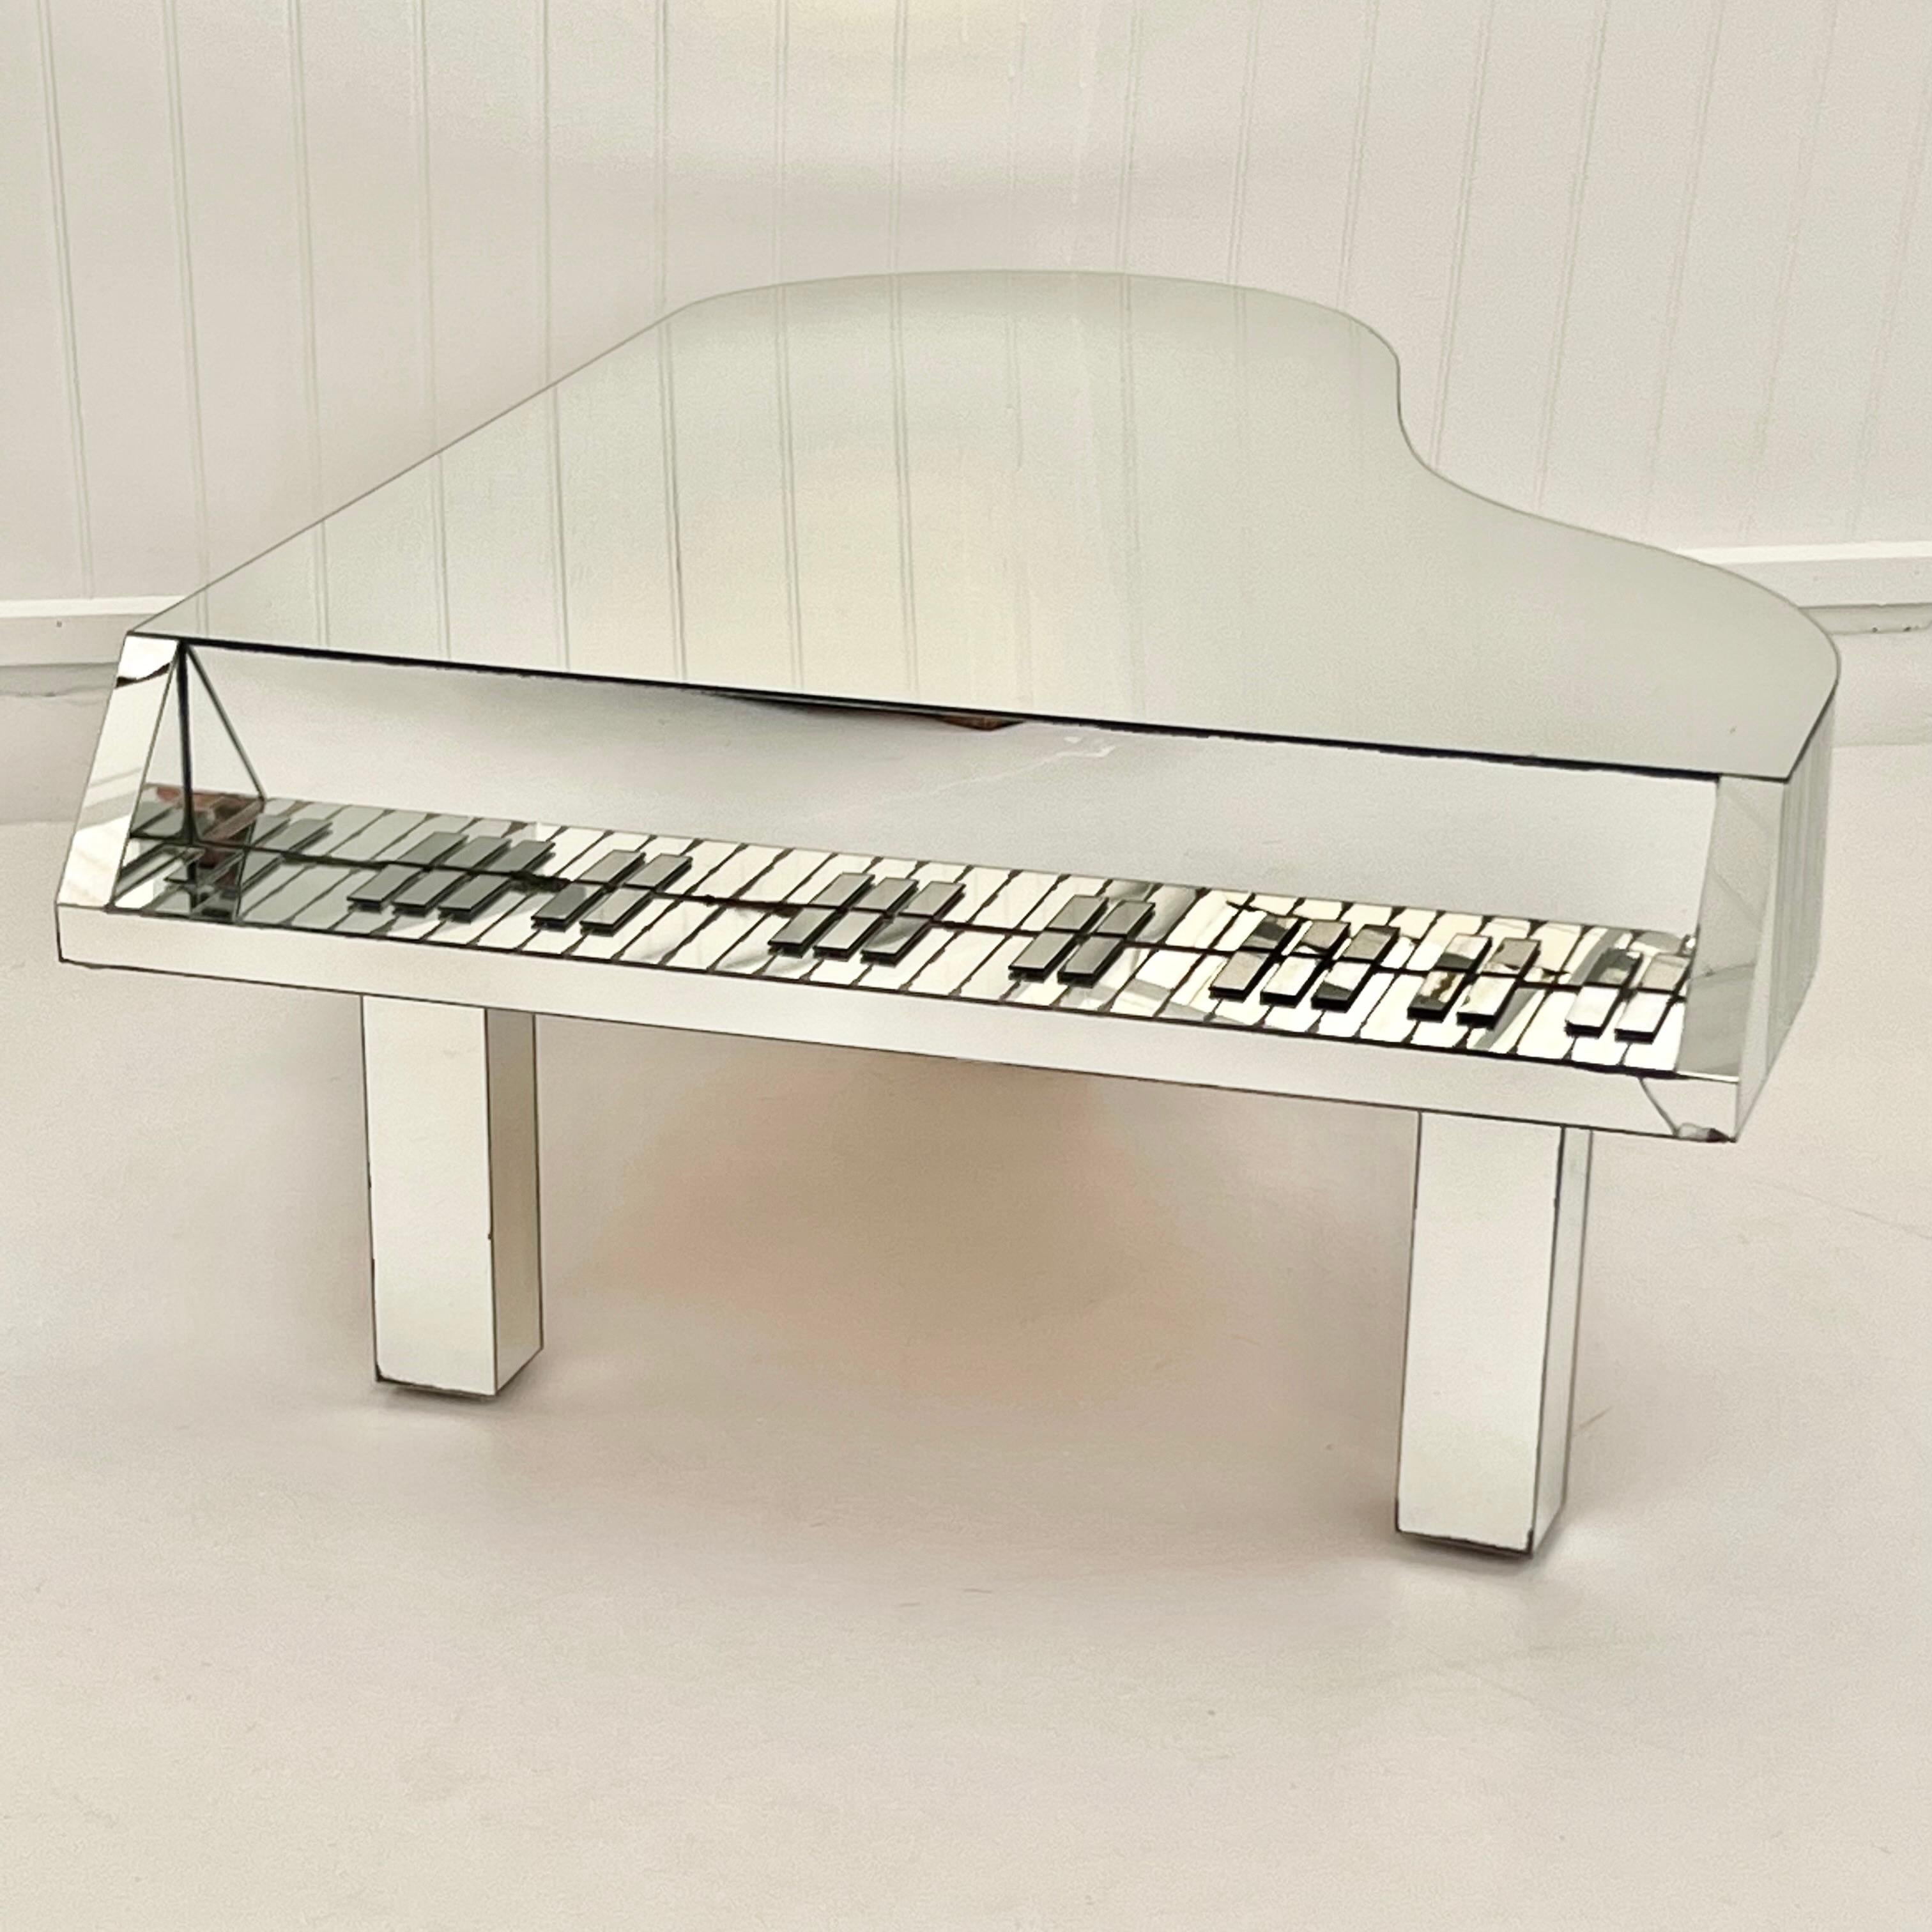 Merveilleusement excentrique, table basse ou de cocktail en forme de piano, en verre miroir, vers les années 1970. Ajoute une touche d'art pop, d'opulence et d'excentricité à tout intérieur. 

Une seule feuille de verre constitue la partie